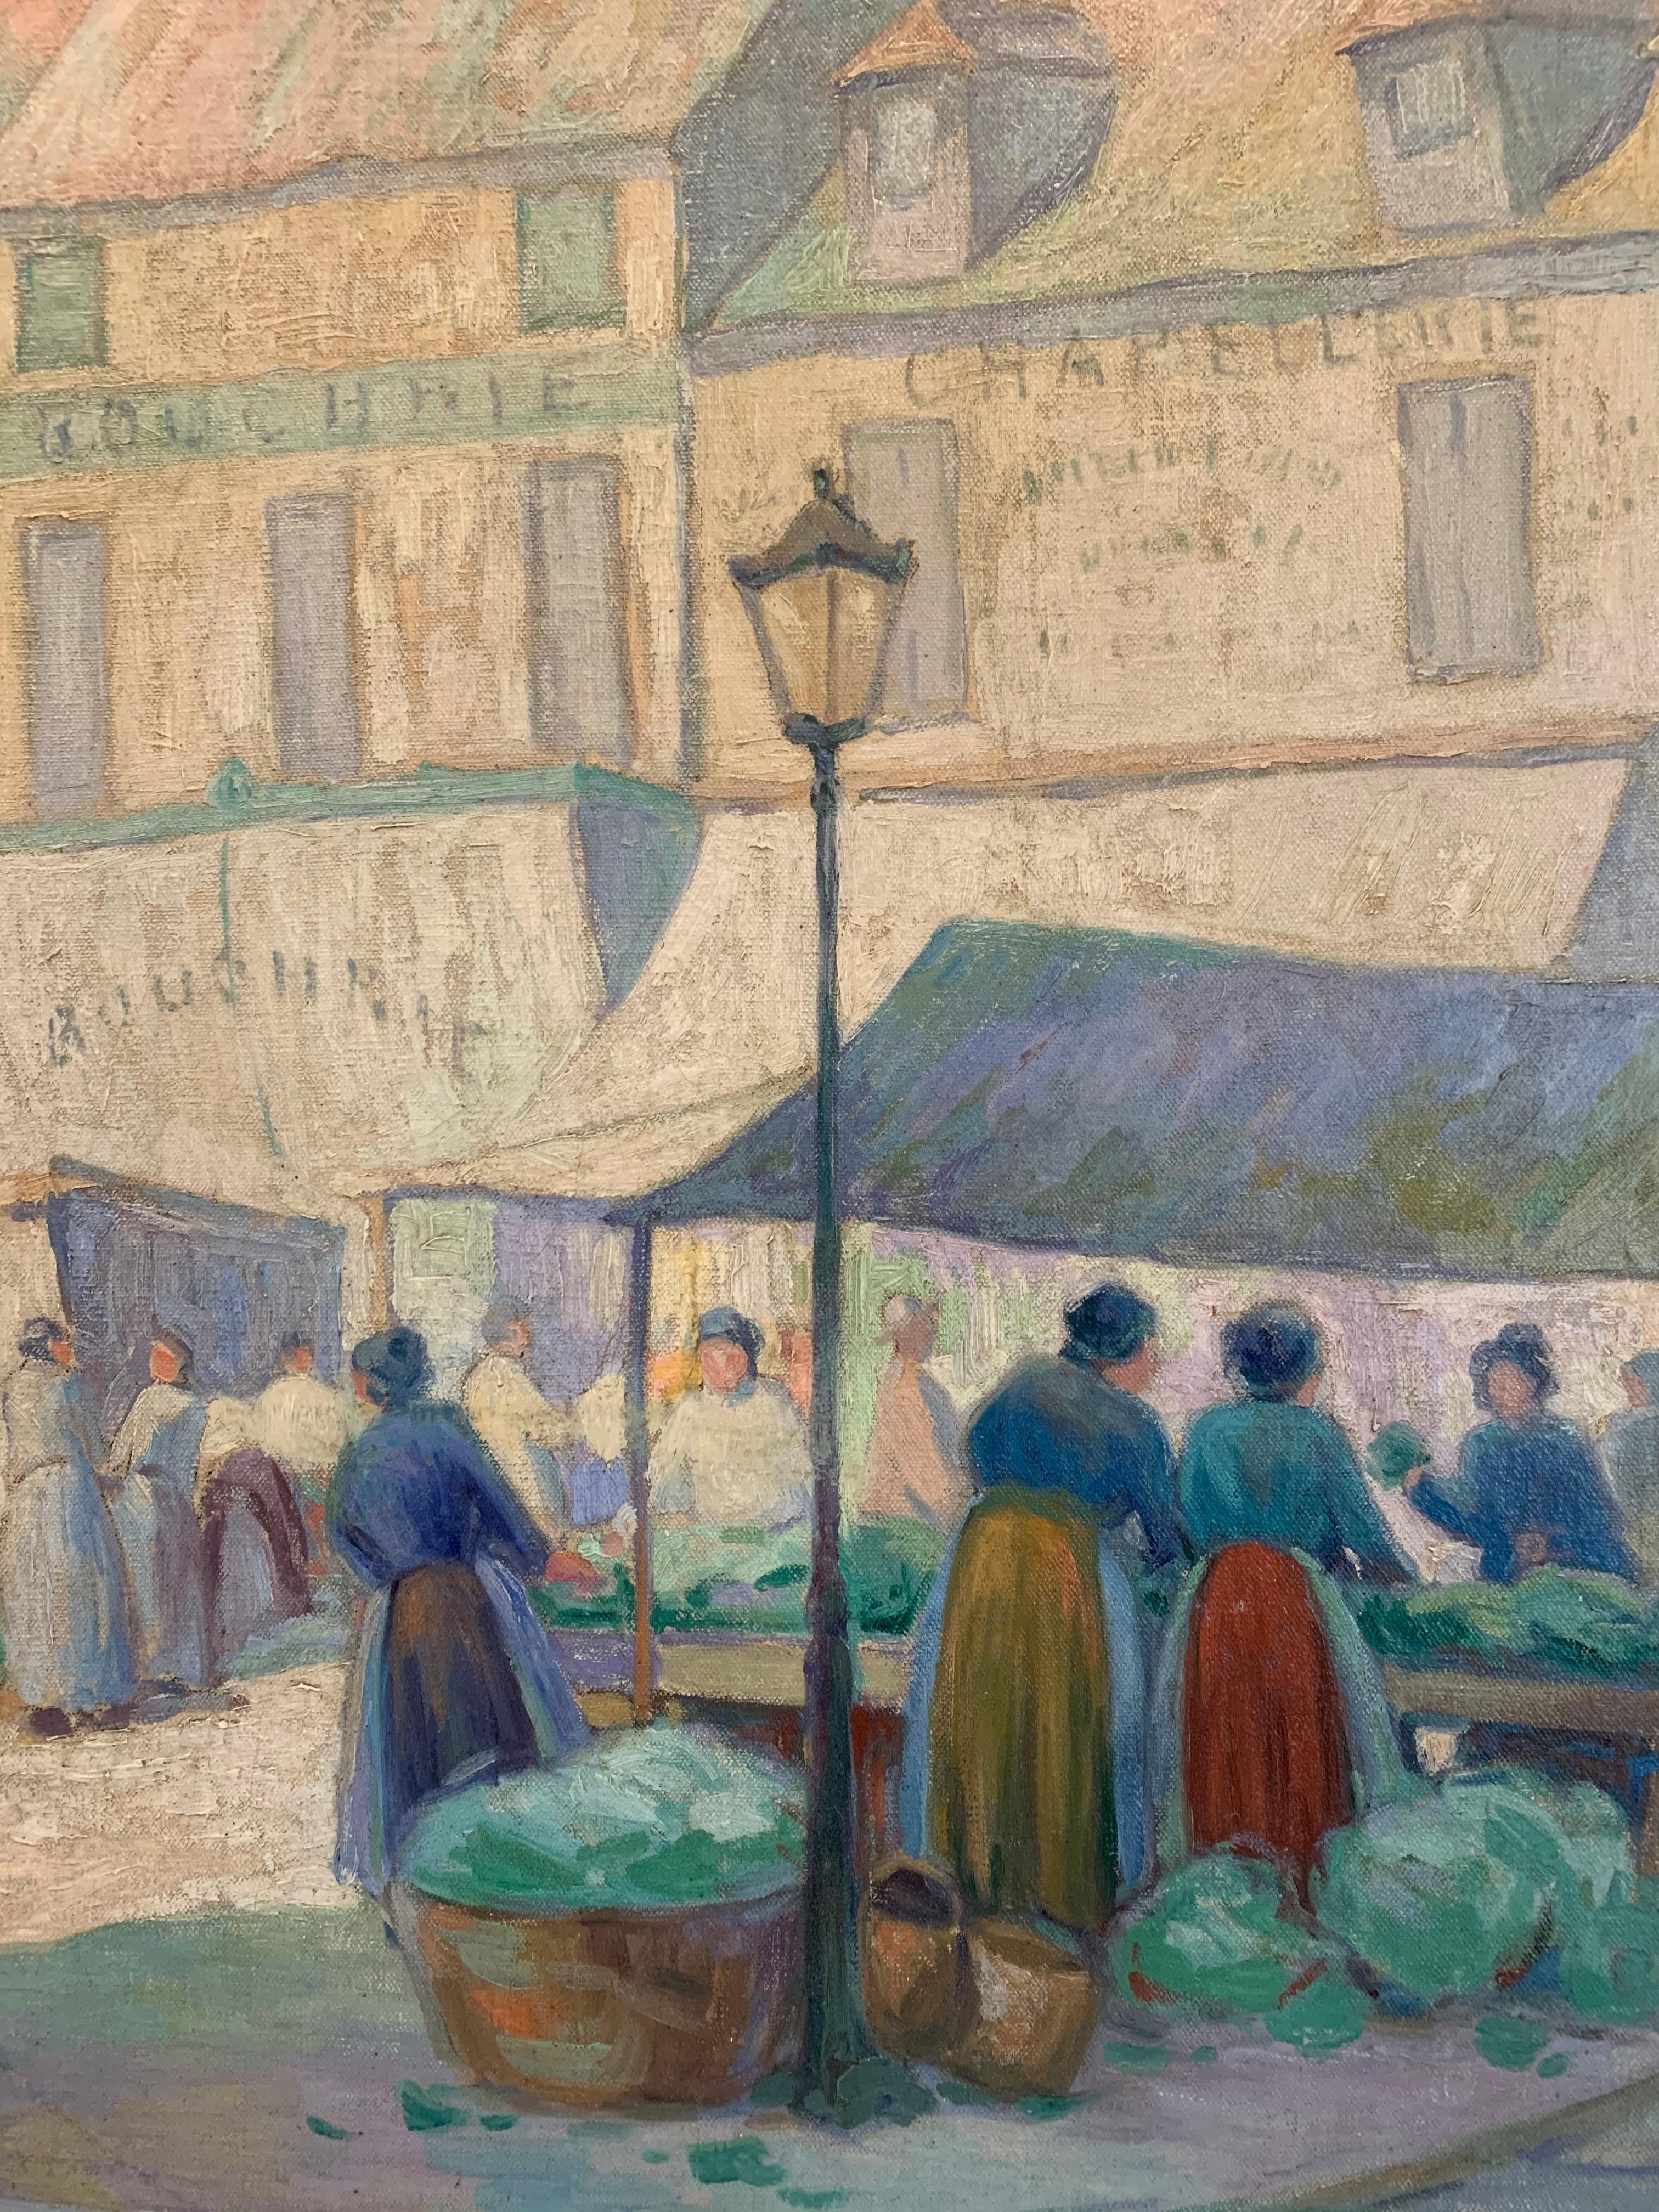 Marché à Paris, scène de ville européenne avec personnages, impressionniste américain, 1922 - Marron Landscape Painting par Albert Van Nesse Greene